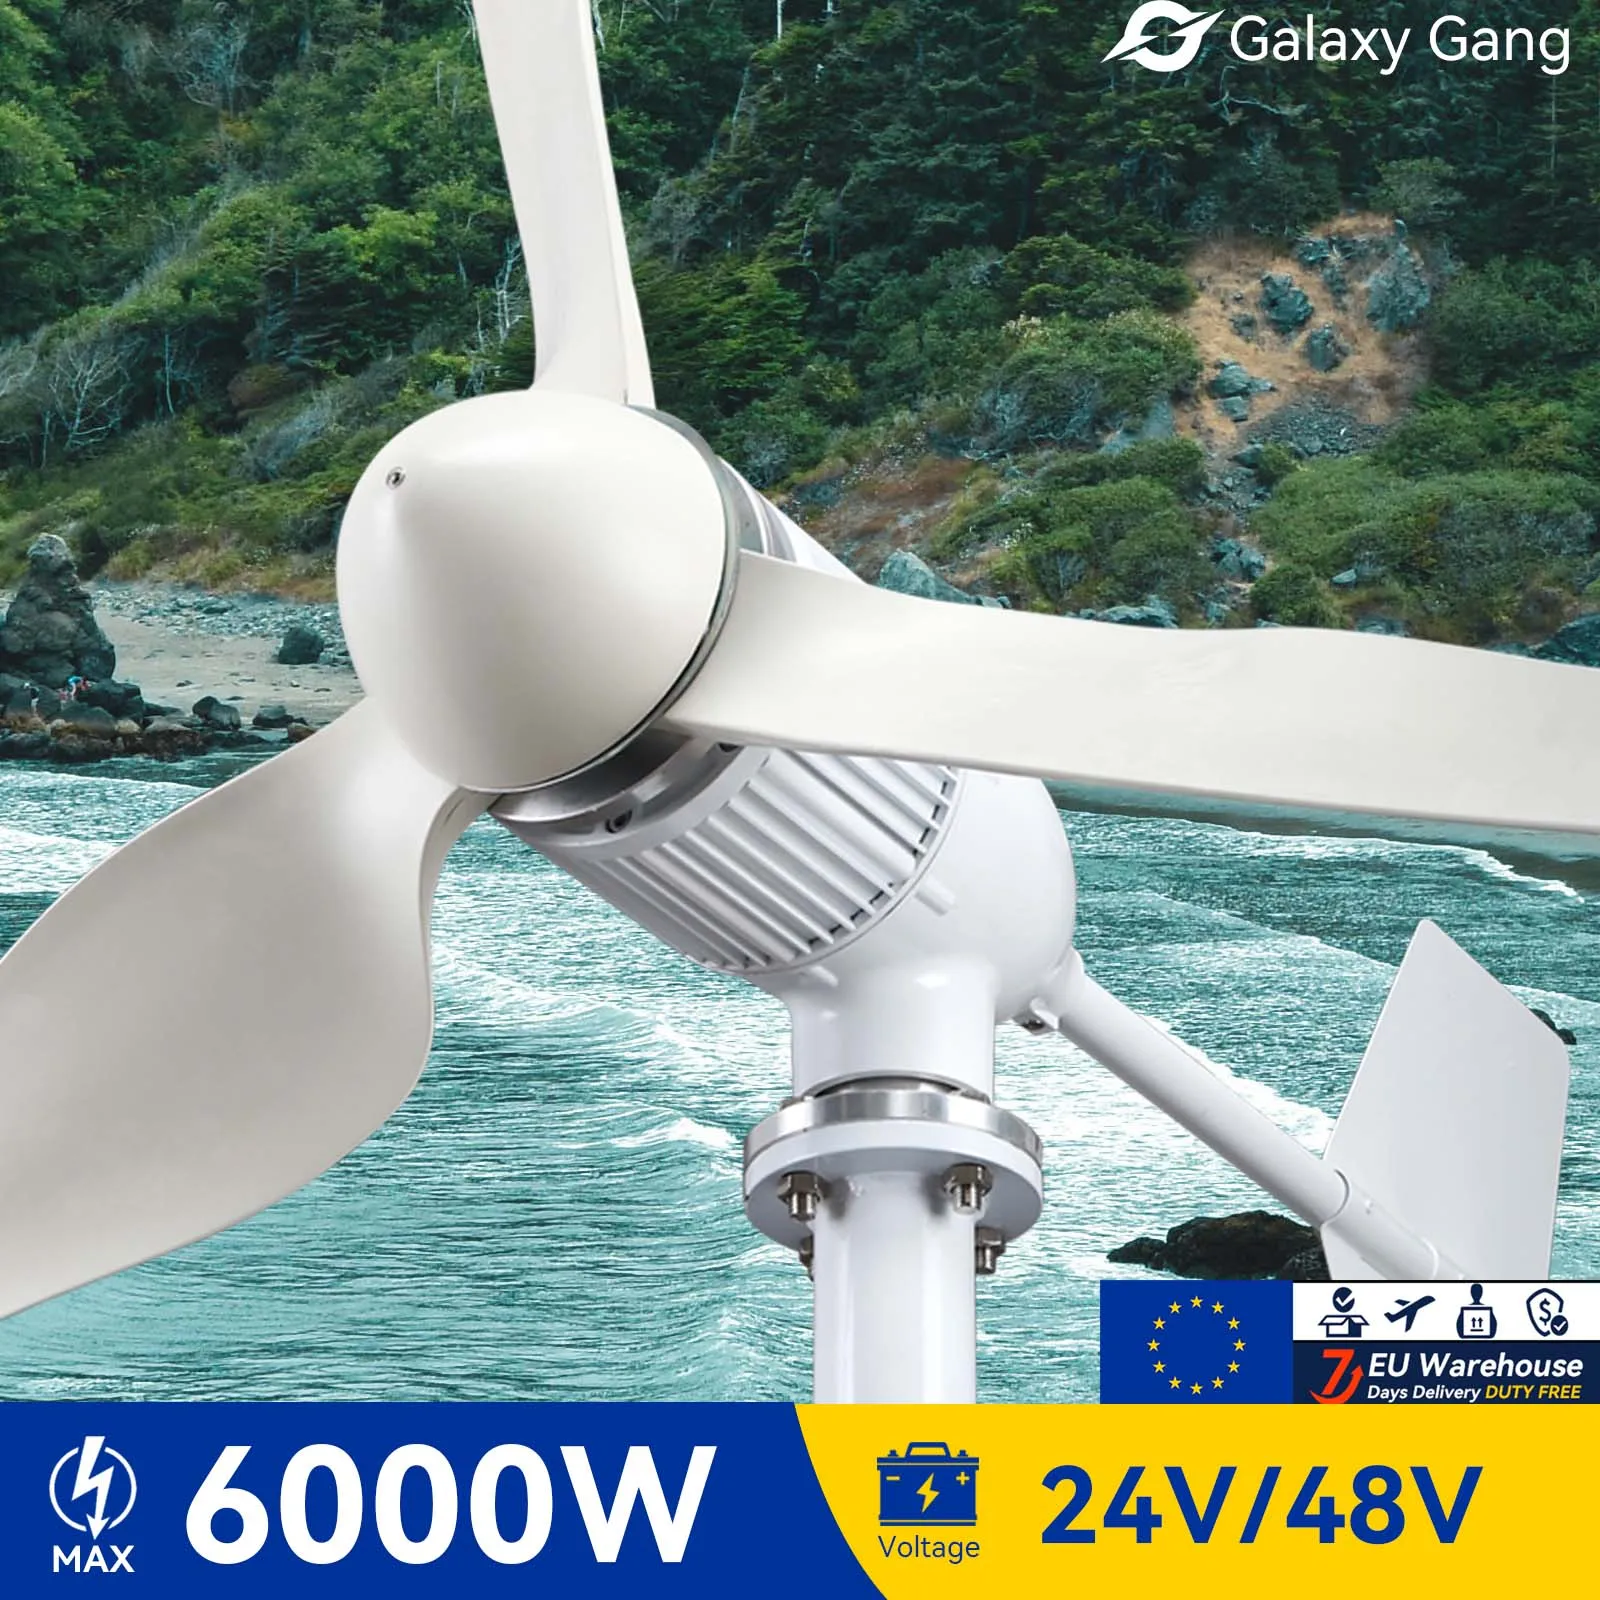 Доставка по ЕС 5 дней Galaxy Gang 6000 Вт Ветряная Мельница Турбина GeneratorKit Мощностью 6 кВт С 3 Лопастями 24 В 48 В С Гибридной системой Зарядного устройства MPPT